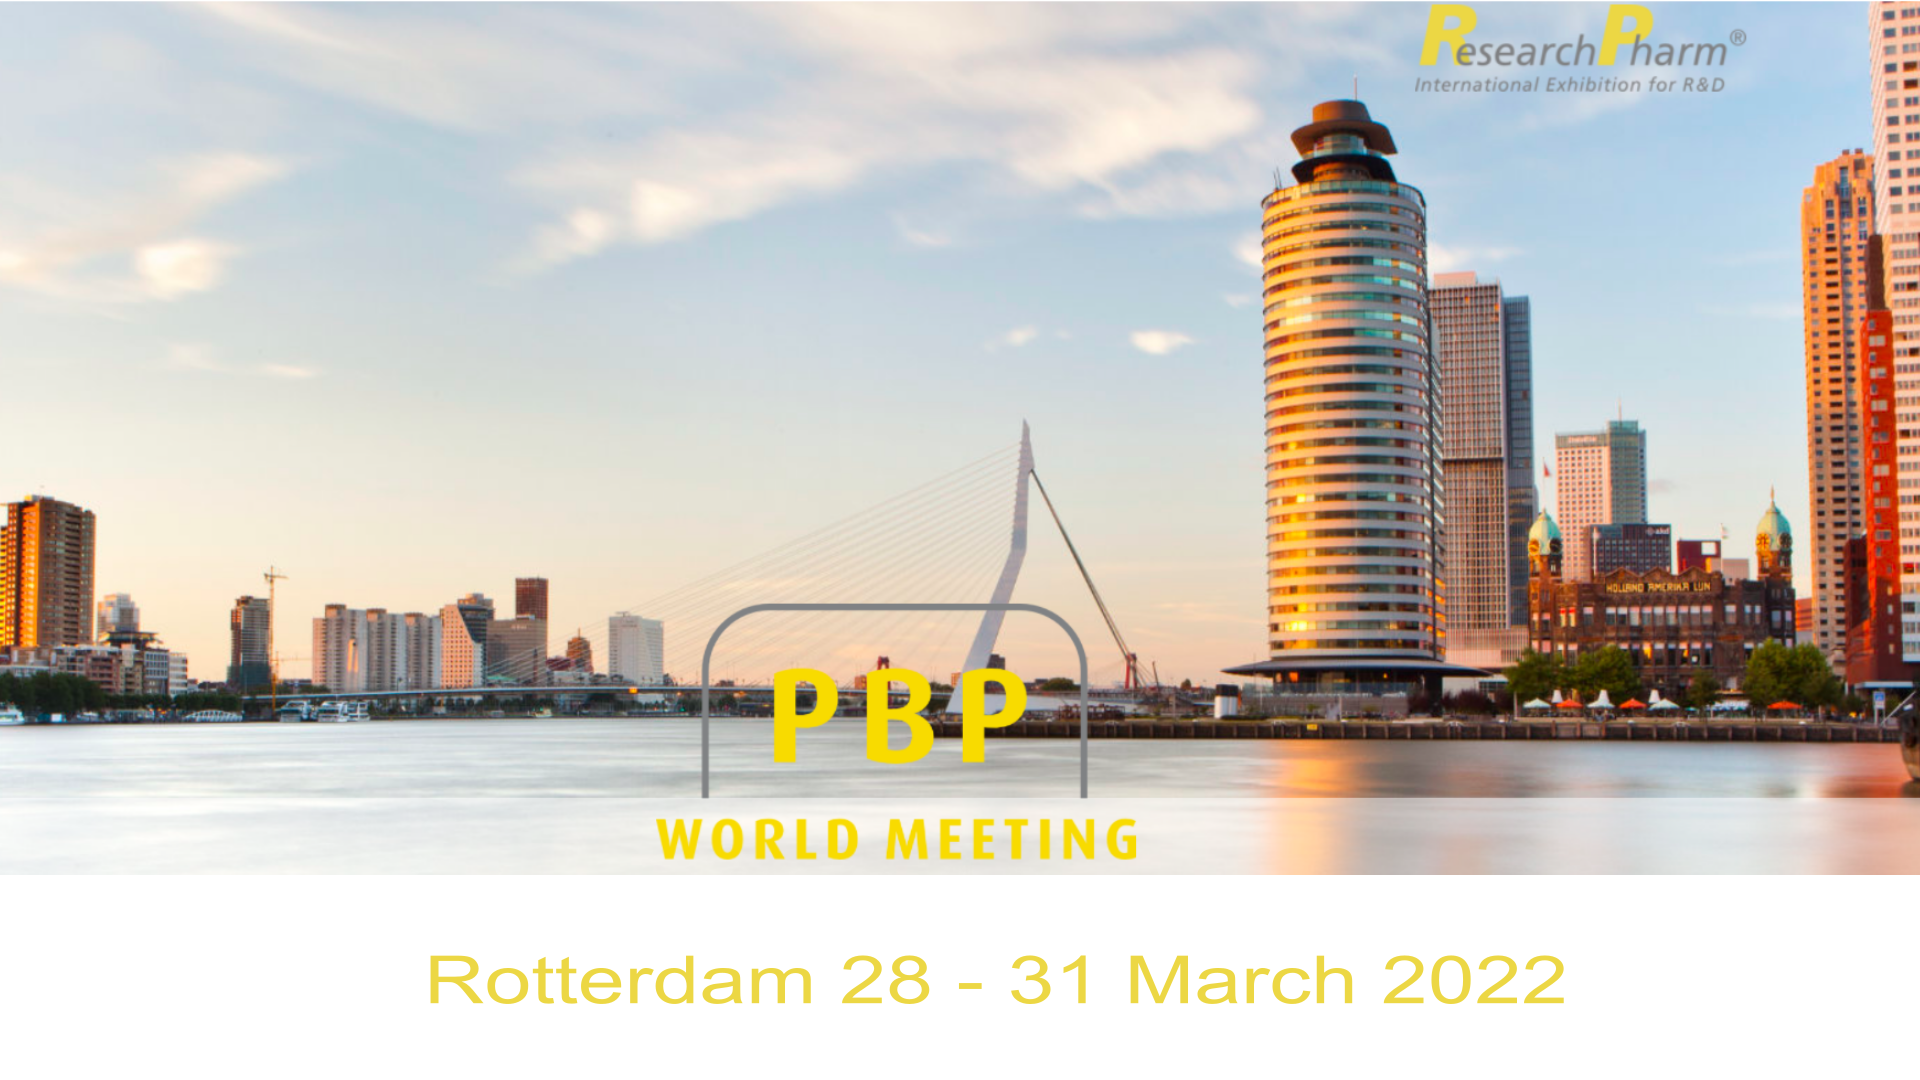 Treffen Sie uns auf dem 13th World Meeting in Rotterdam